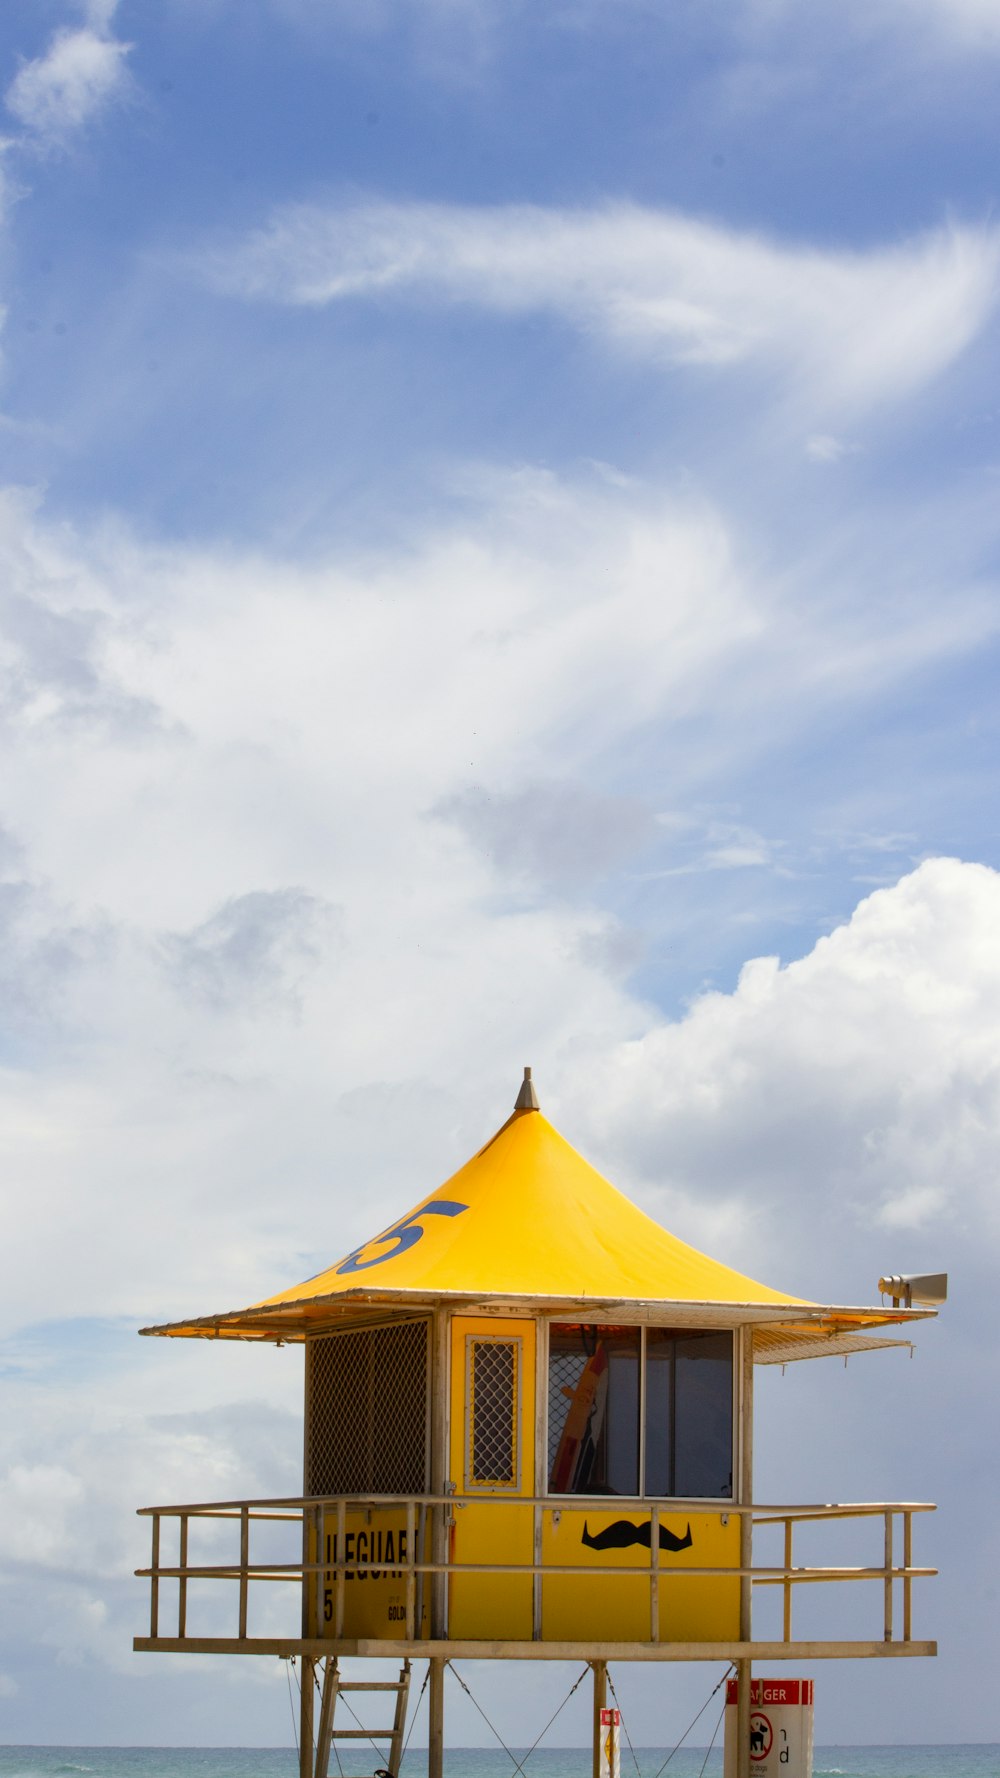 a yellow house on a beach